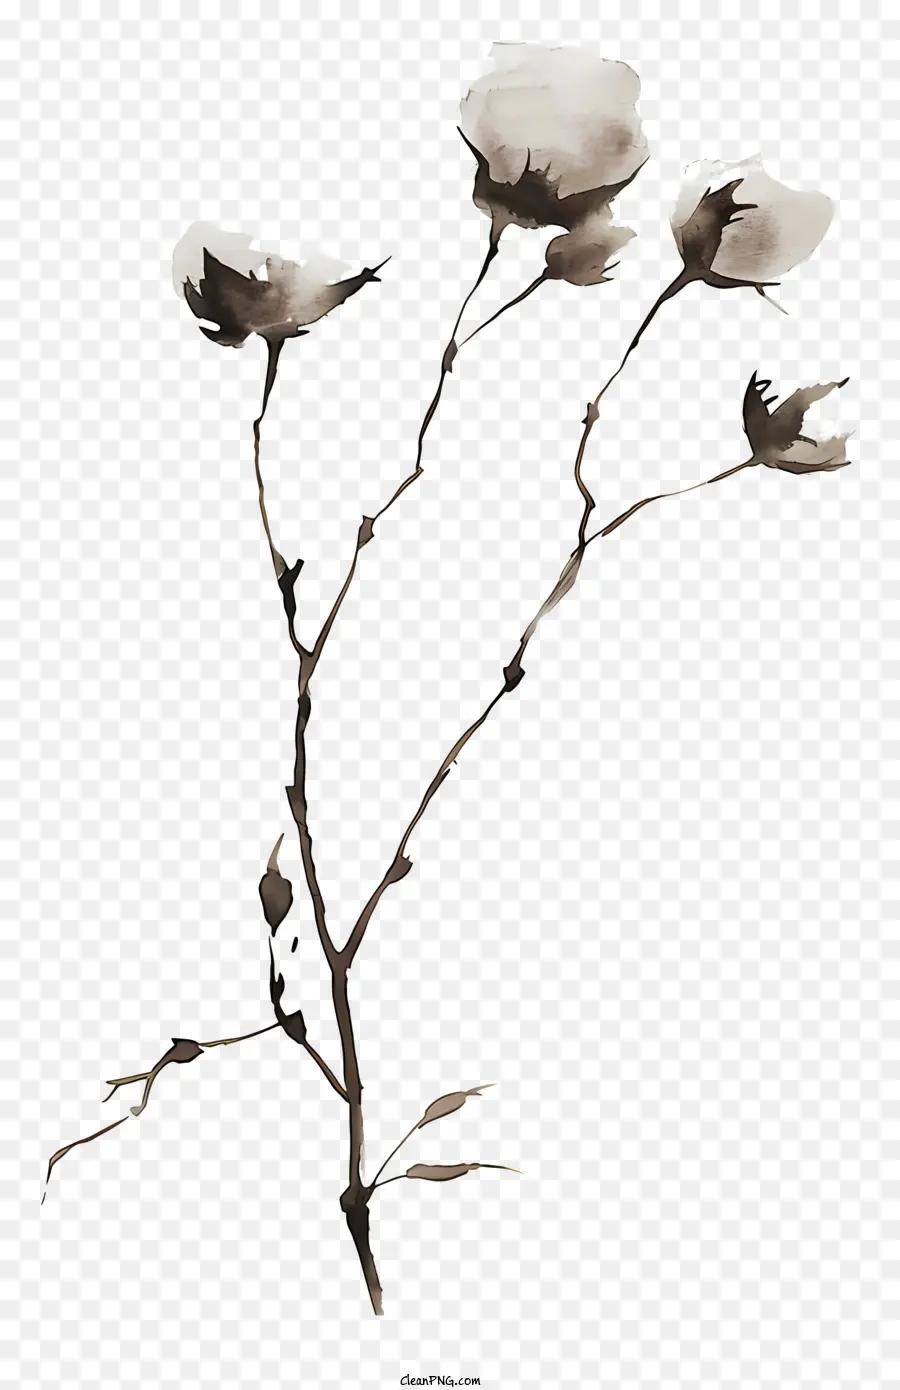 flauschiger Baumwollzweig weißer Blüten Baum Cluster Stamm - Weiße Blüten auf verdrehtem Baumzweig